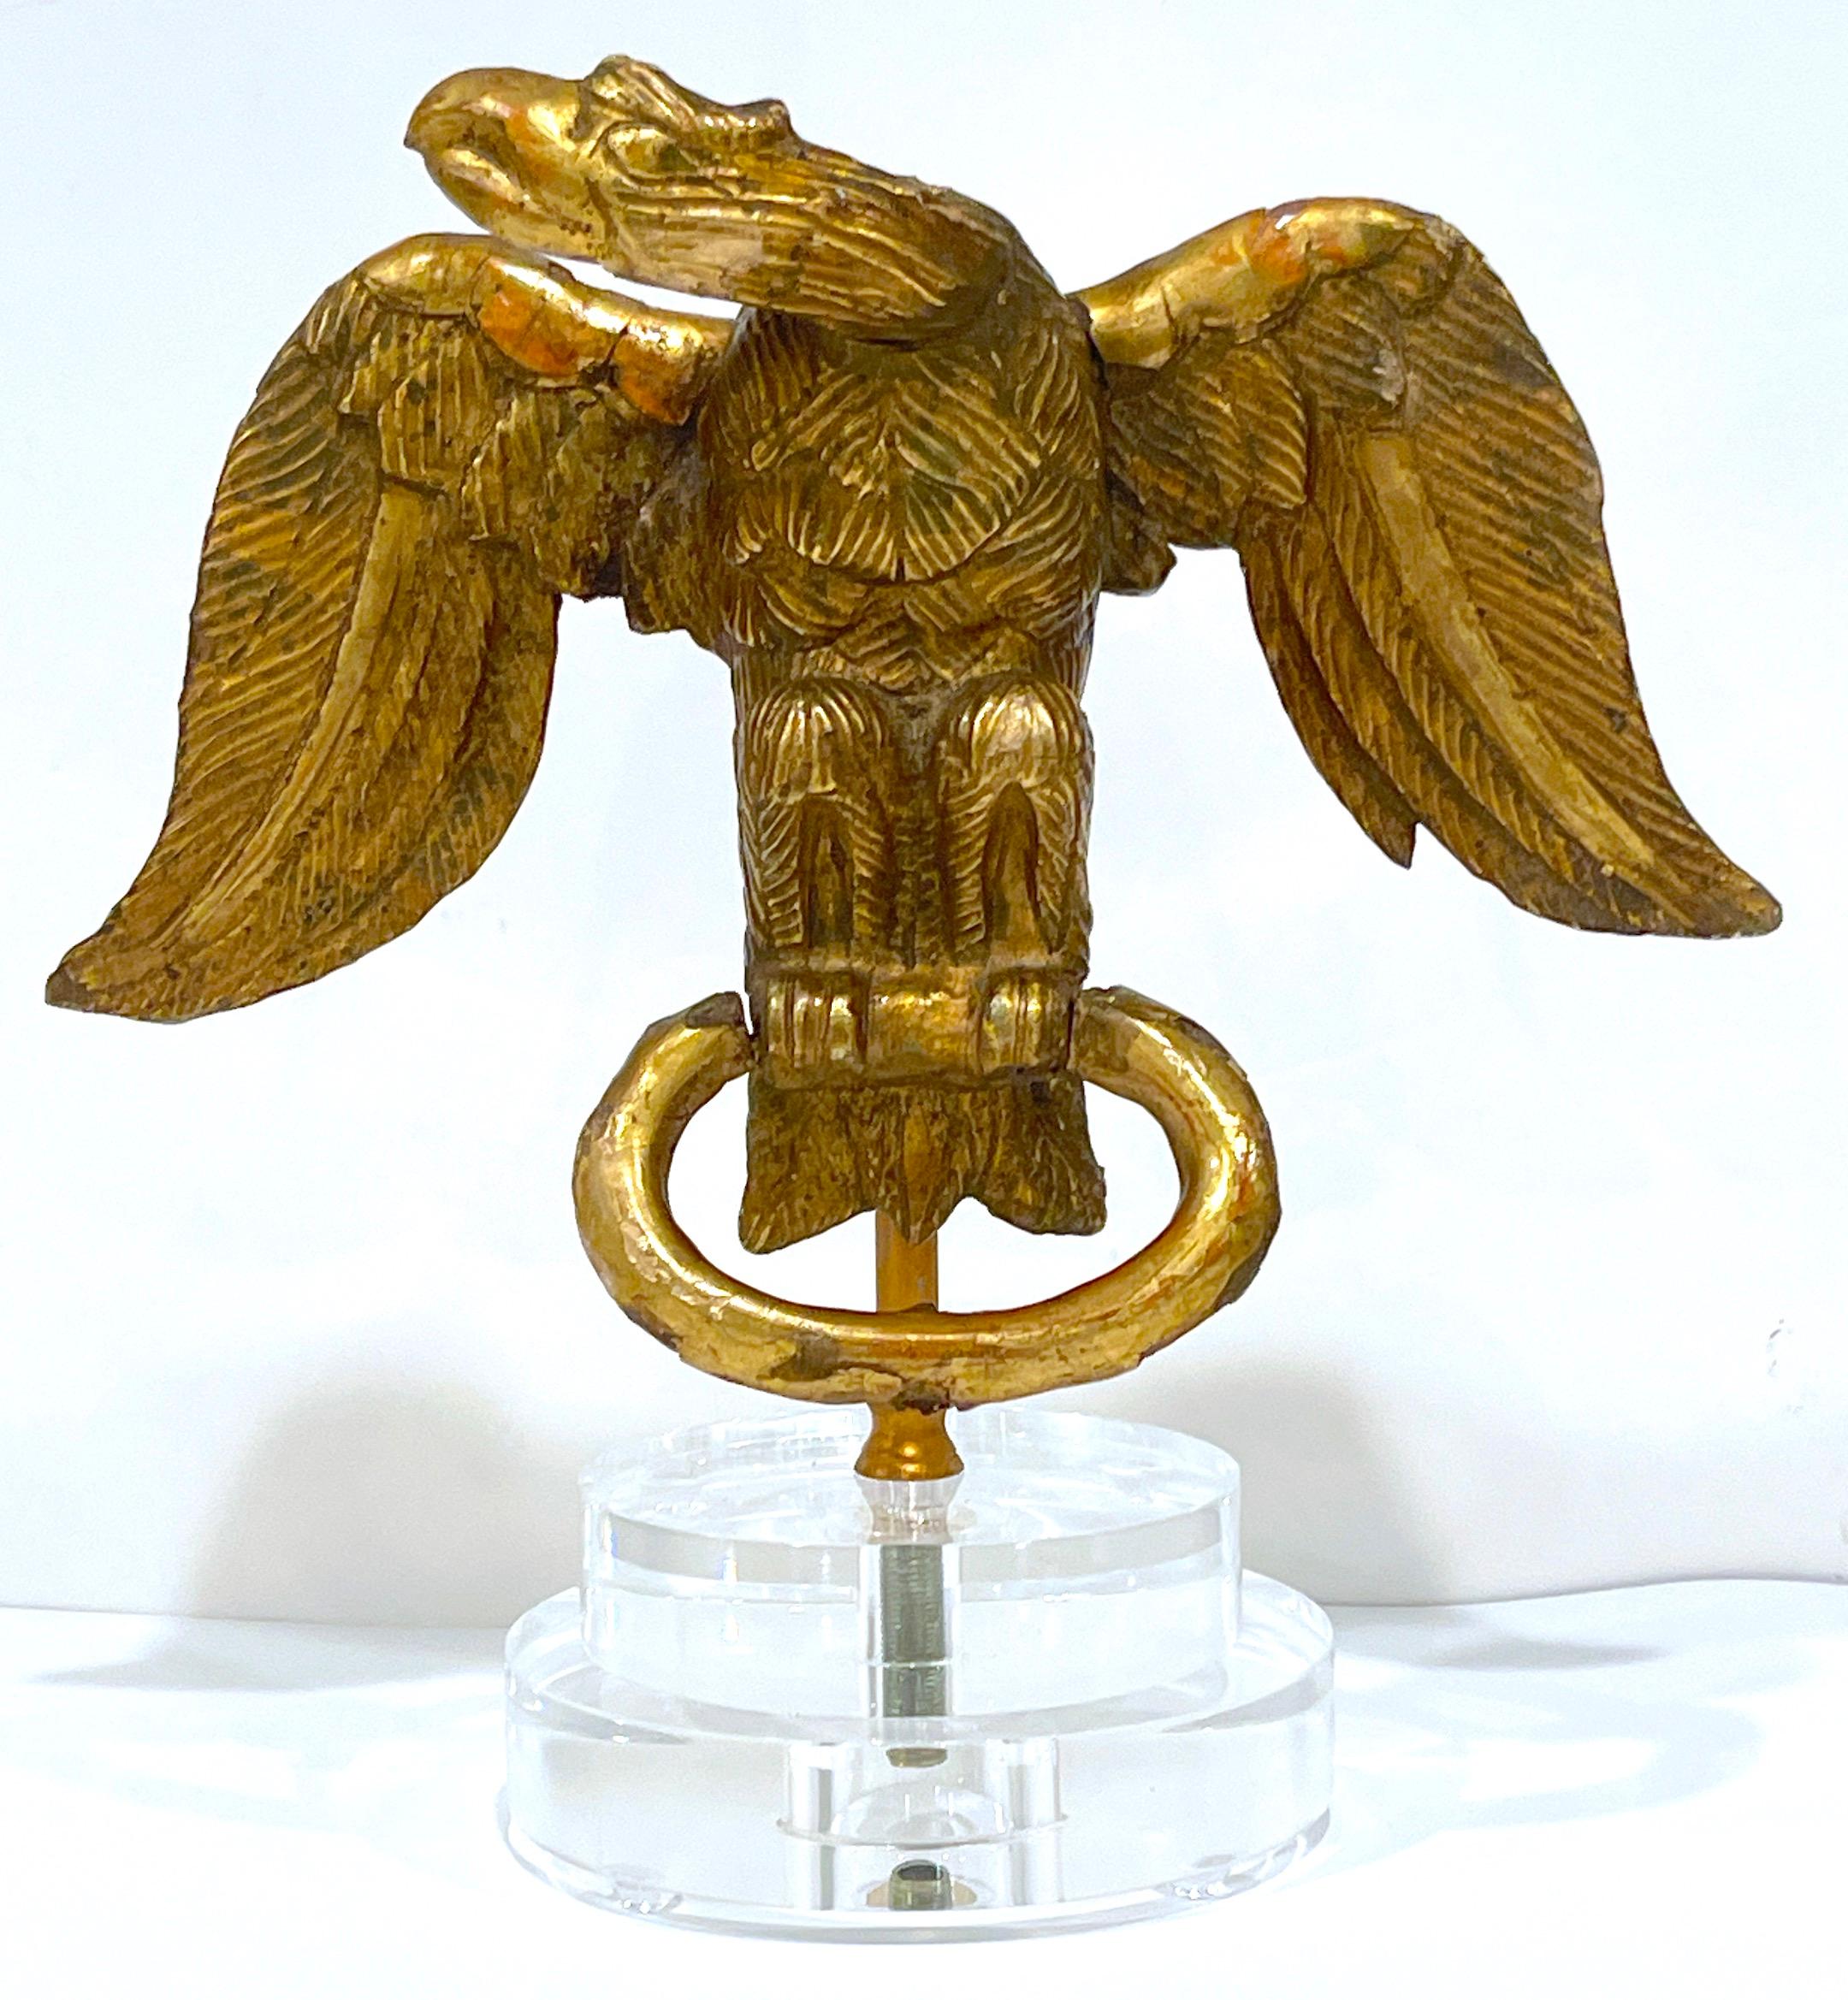 Dieser geschnitzte englische Adler aus Goldholz aus dem 18. Jahrhundert, der aus der georgianischen Epoche stammt, ist ein großartiges Beispiel für ein handwerkliches Möbelstück aus dieser Zeit. Die Adlerschnitzerei ist fachmännisch aus vergoldetem